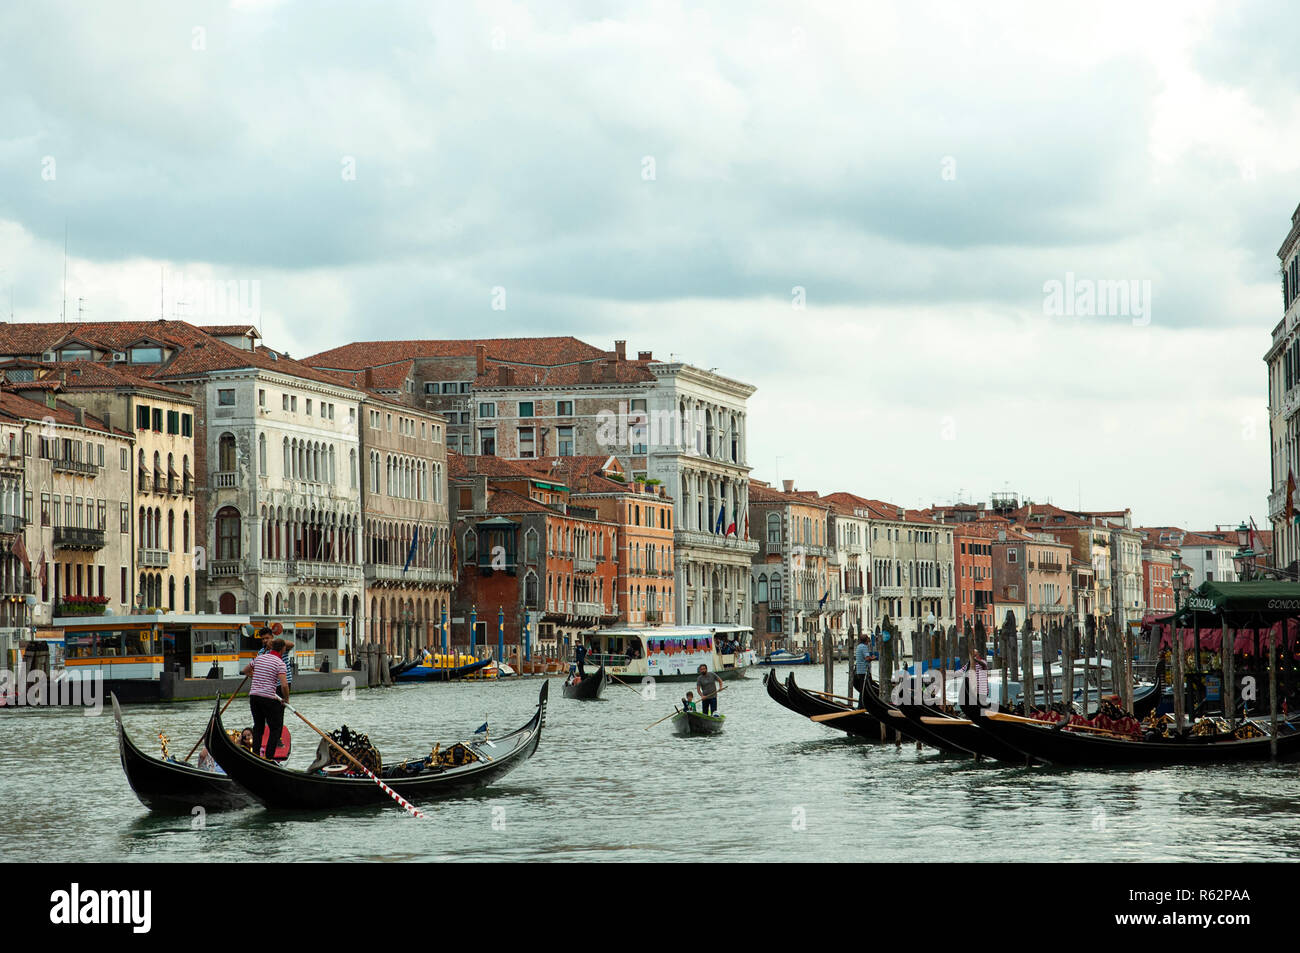 Colpo lungo delle gondole in un canale veneziano Foto Stock